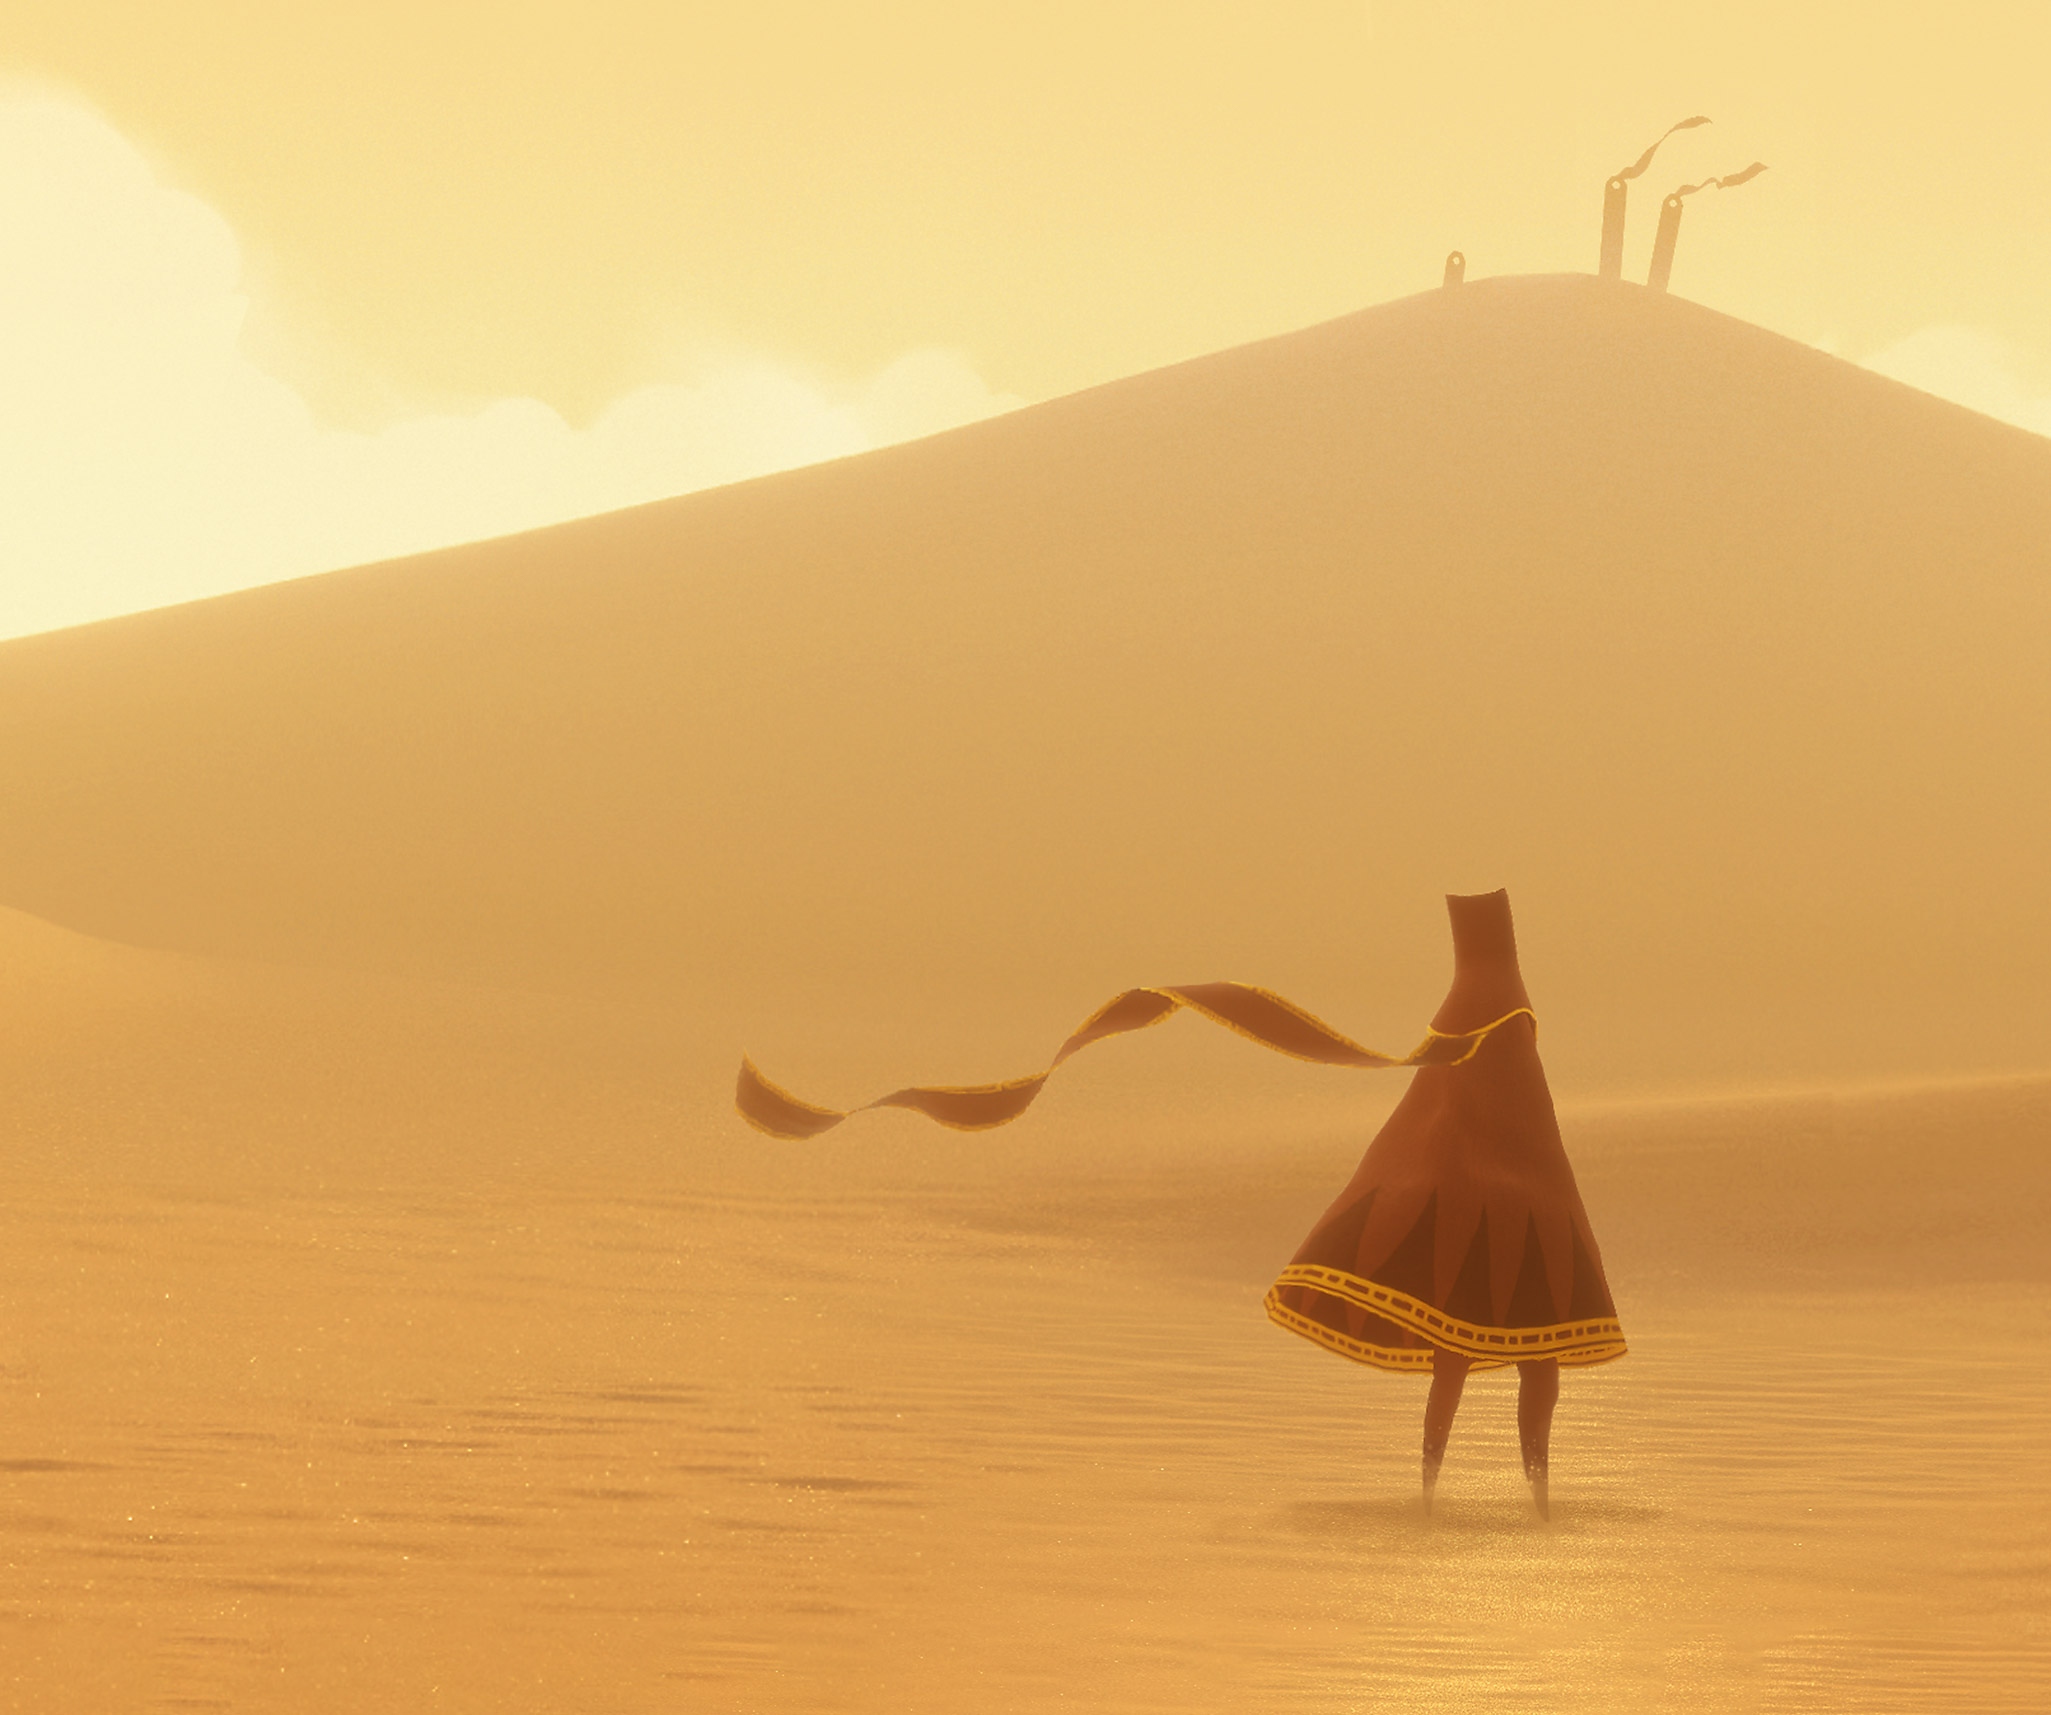 Journey – Key-Art mit dem Hauptcharakter in einer weitläufigen, sonnigen Wüste